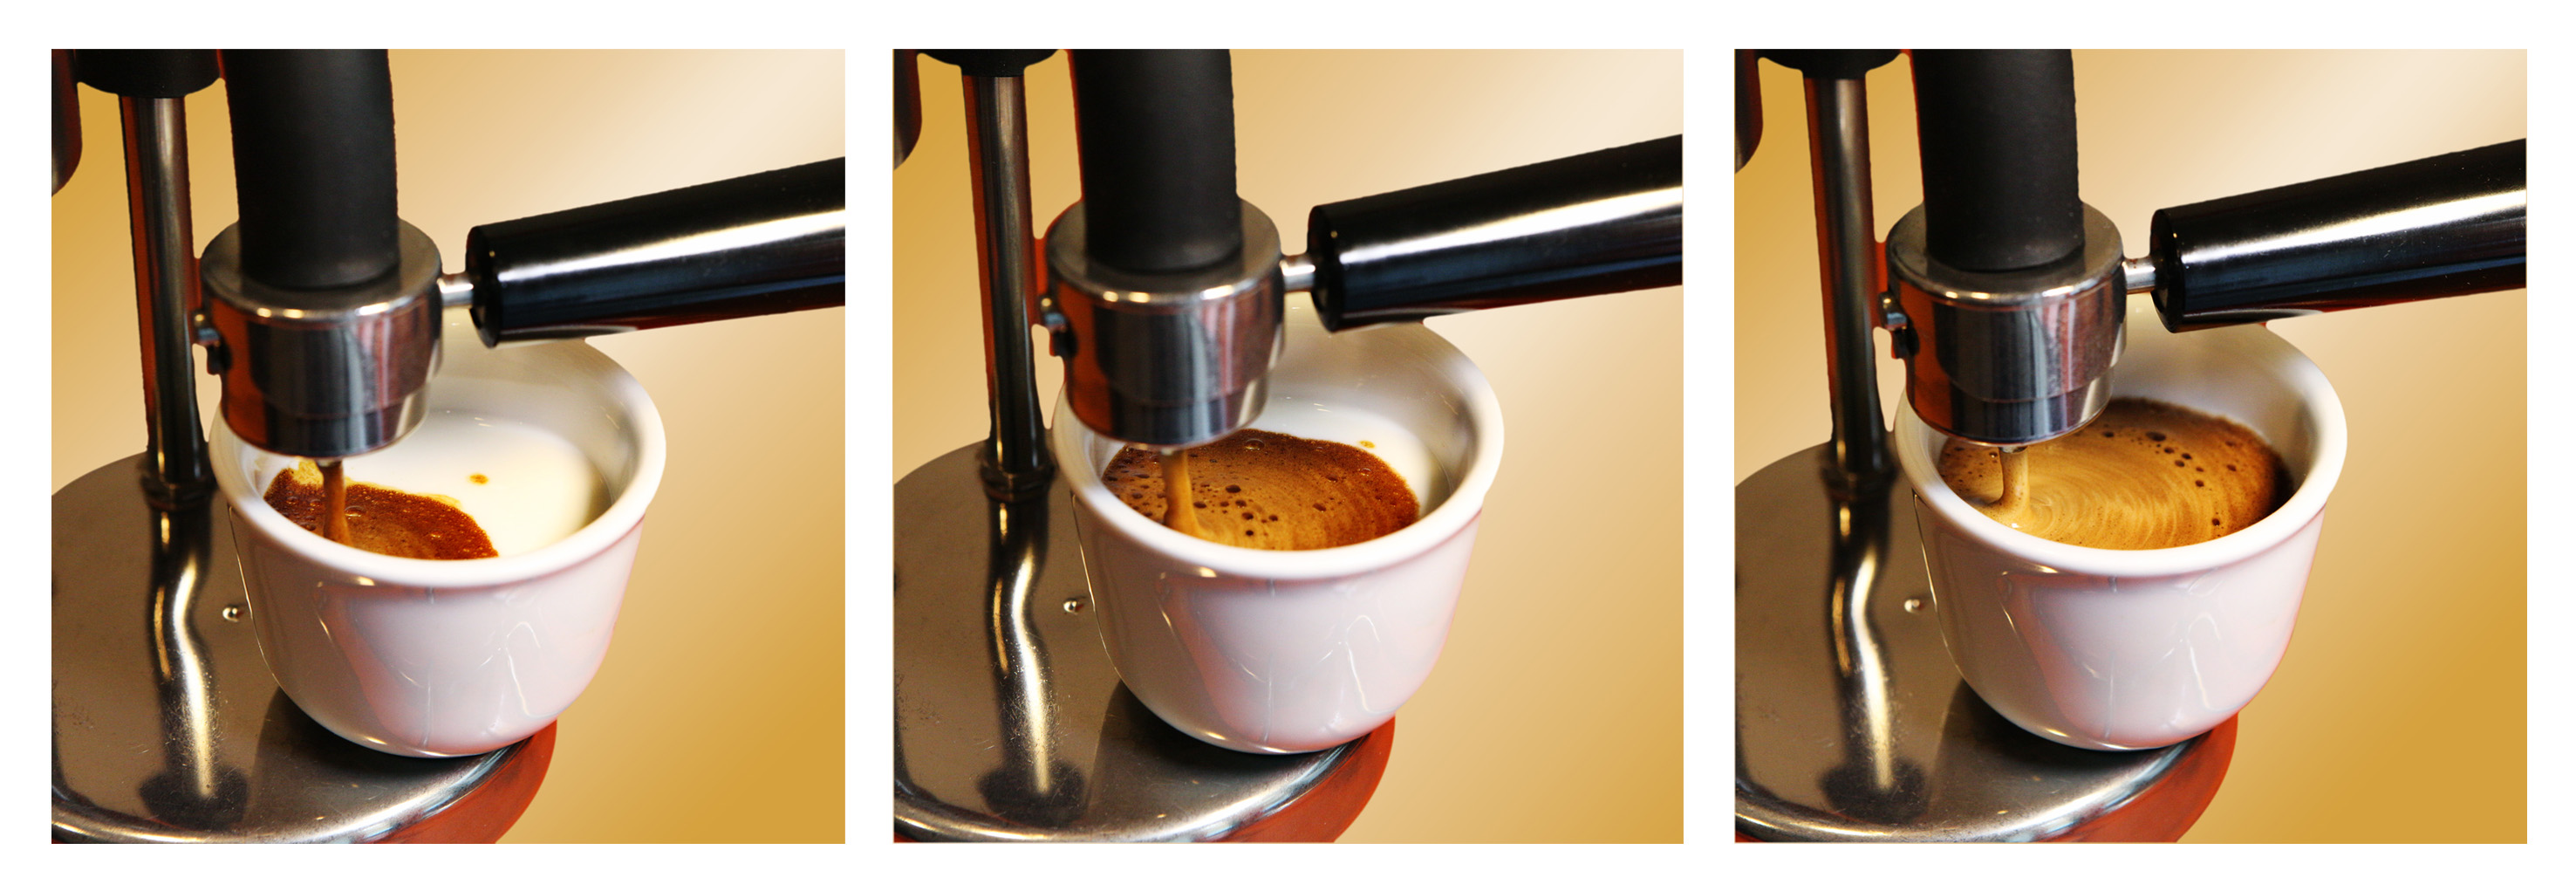 Kamira. L'espresso cremoso sul fornello di casa - Caratteristiche